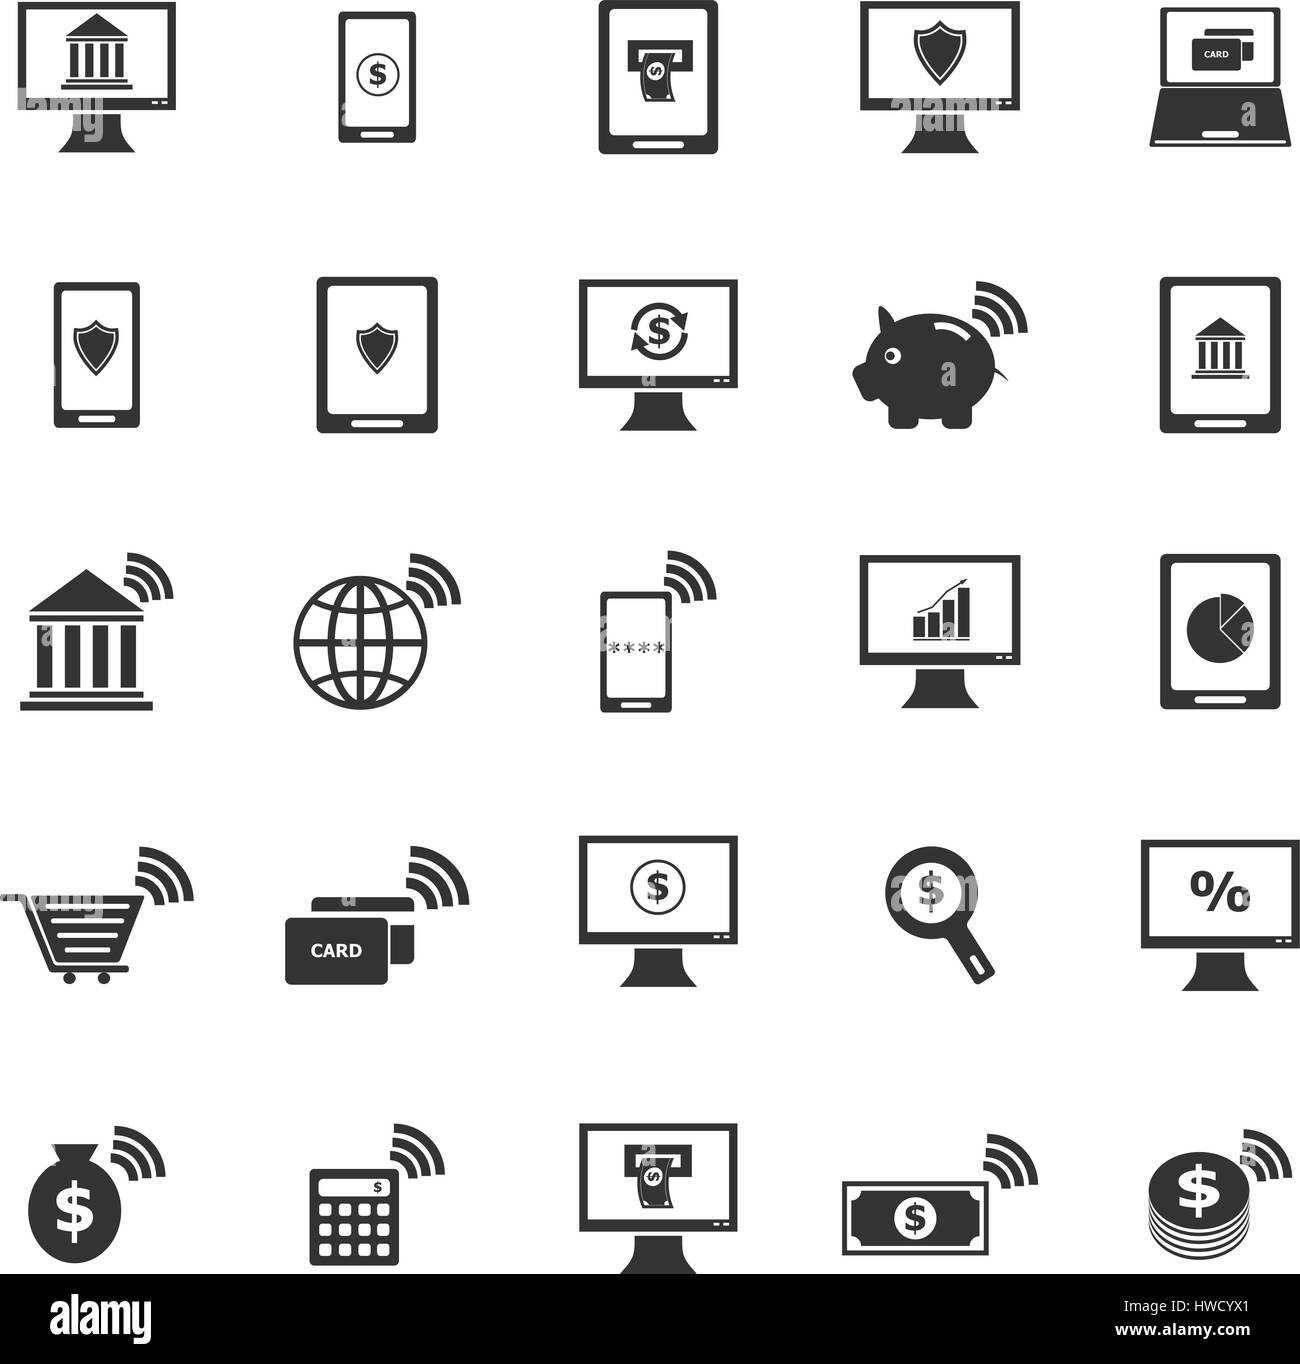 Online banking icone su sfondo bianco, vettore di stock Illustrazione Vettoriale